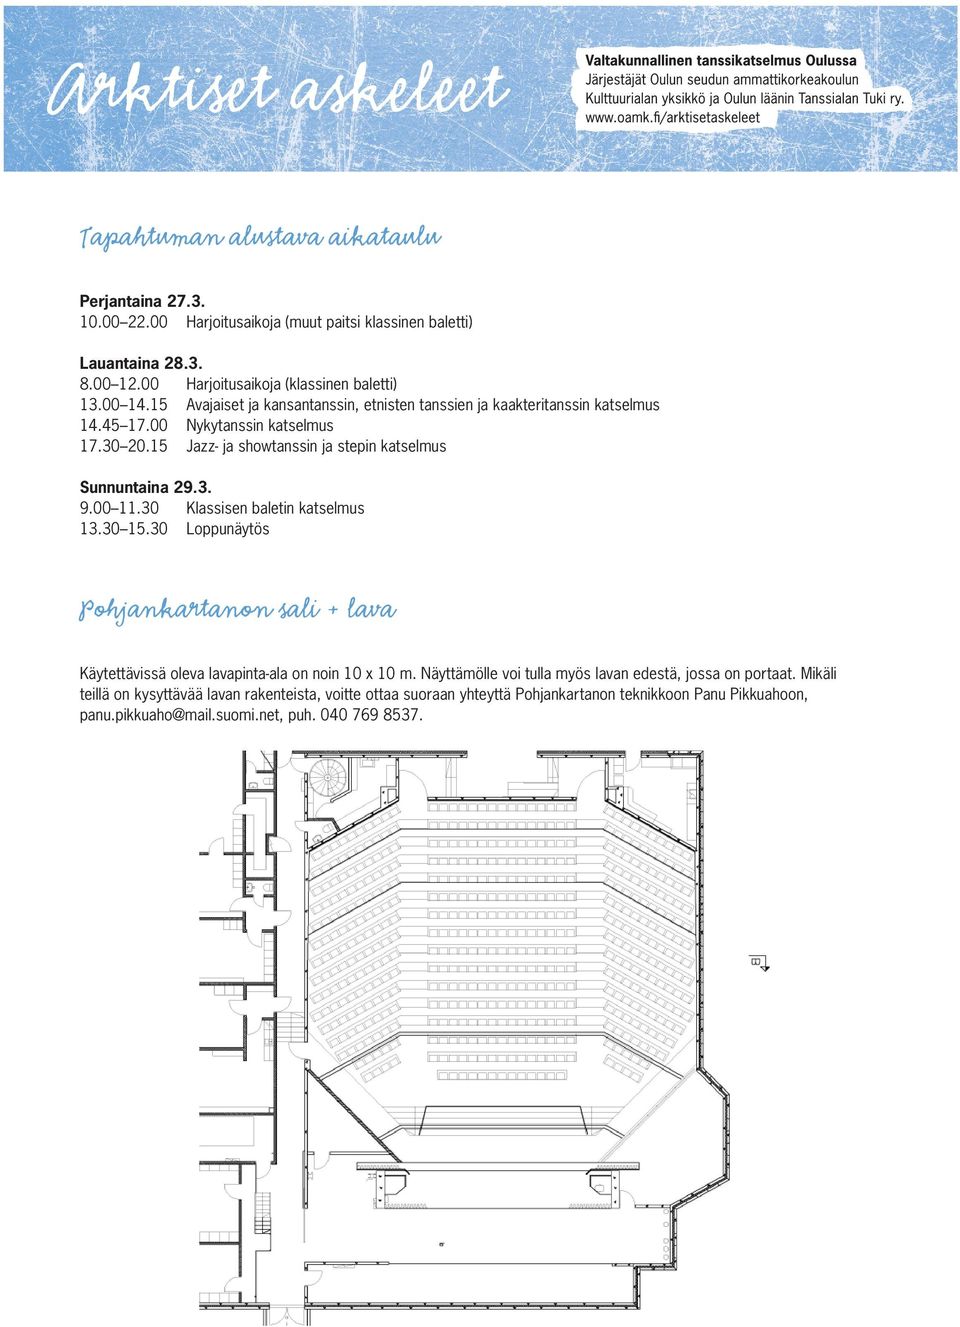 00 11.30 Klassisen baletin katselmus 13.30 15.30 Loppunäytös Pohjankartanon sali + lava Käytettävissä oleva lavapinta-ala on noin 10 x 10 m.